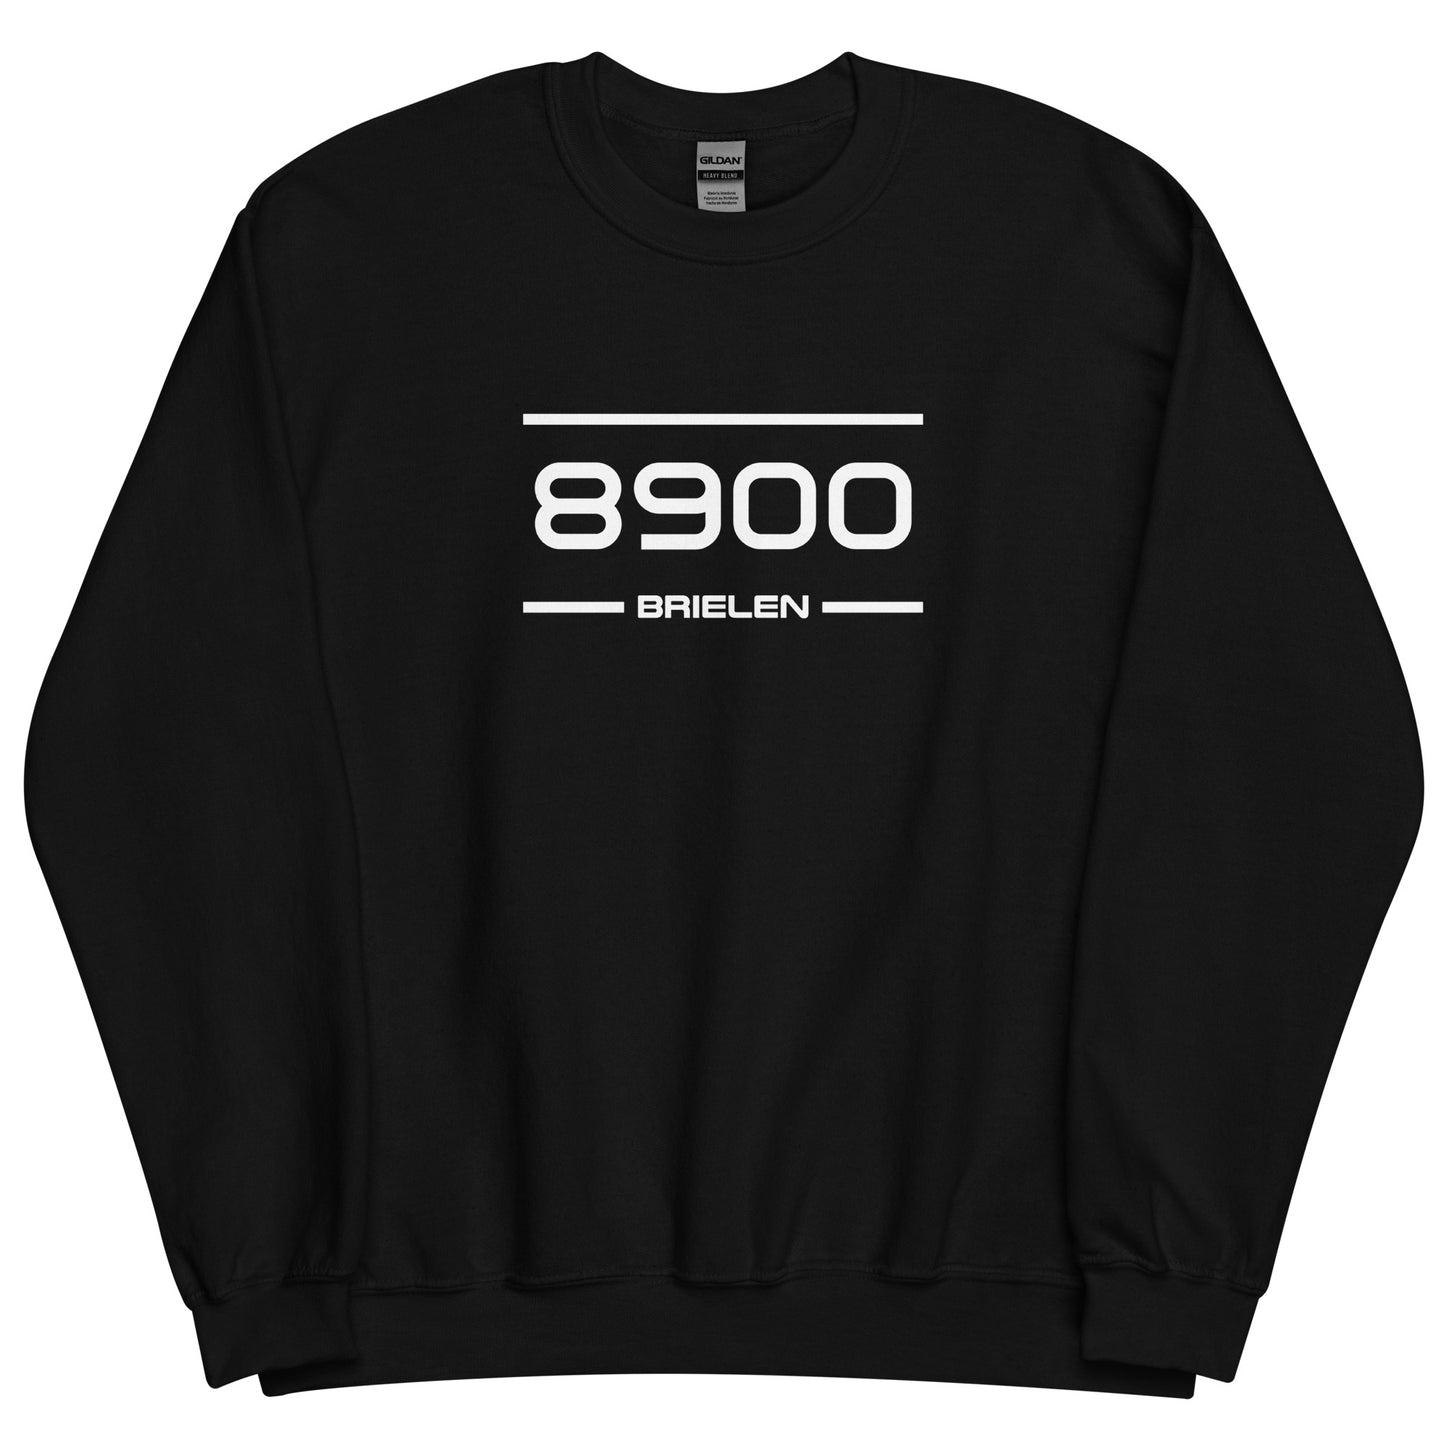 Sweater - 8900 - Brielen (M/V)